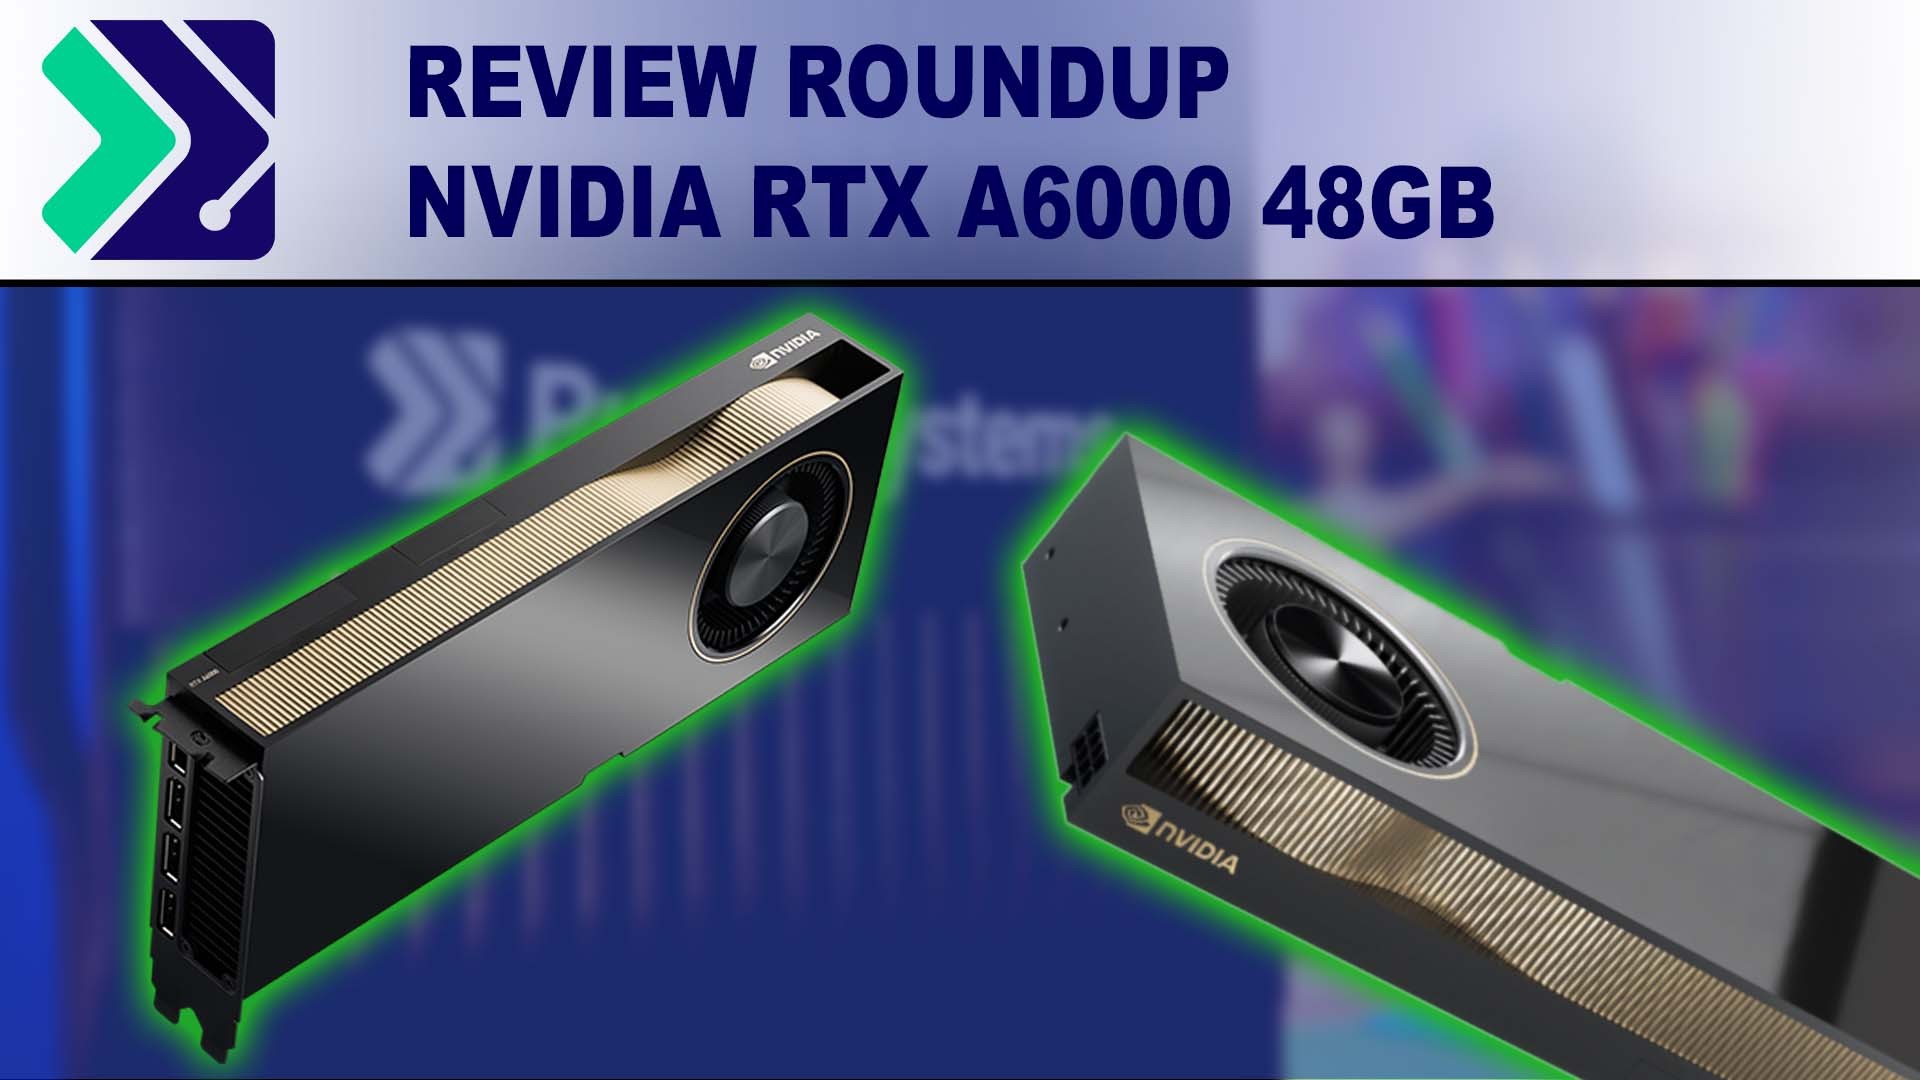 NVIDIA RTX A6000 48GB benchmark review summary